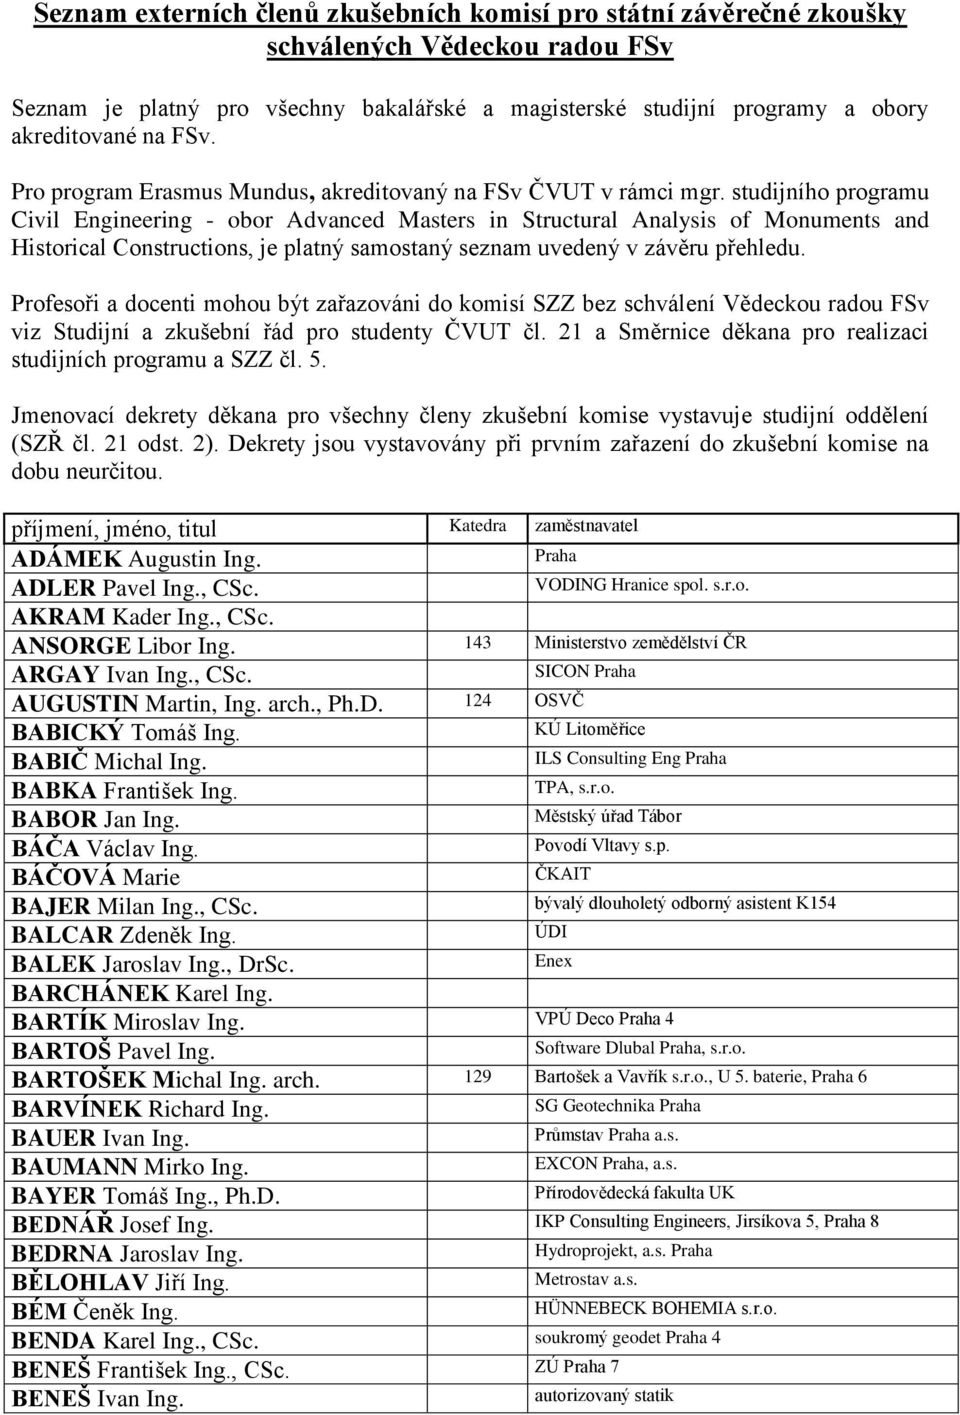 Seznam externích členů zkušebních komisí pro státní závěrečné zkoušky  schválených Vědeckou radou FSv - PDF Stažení zdarma